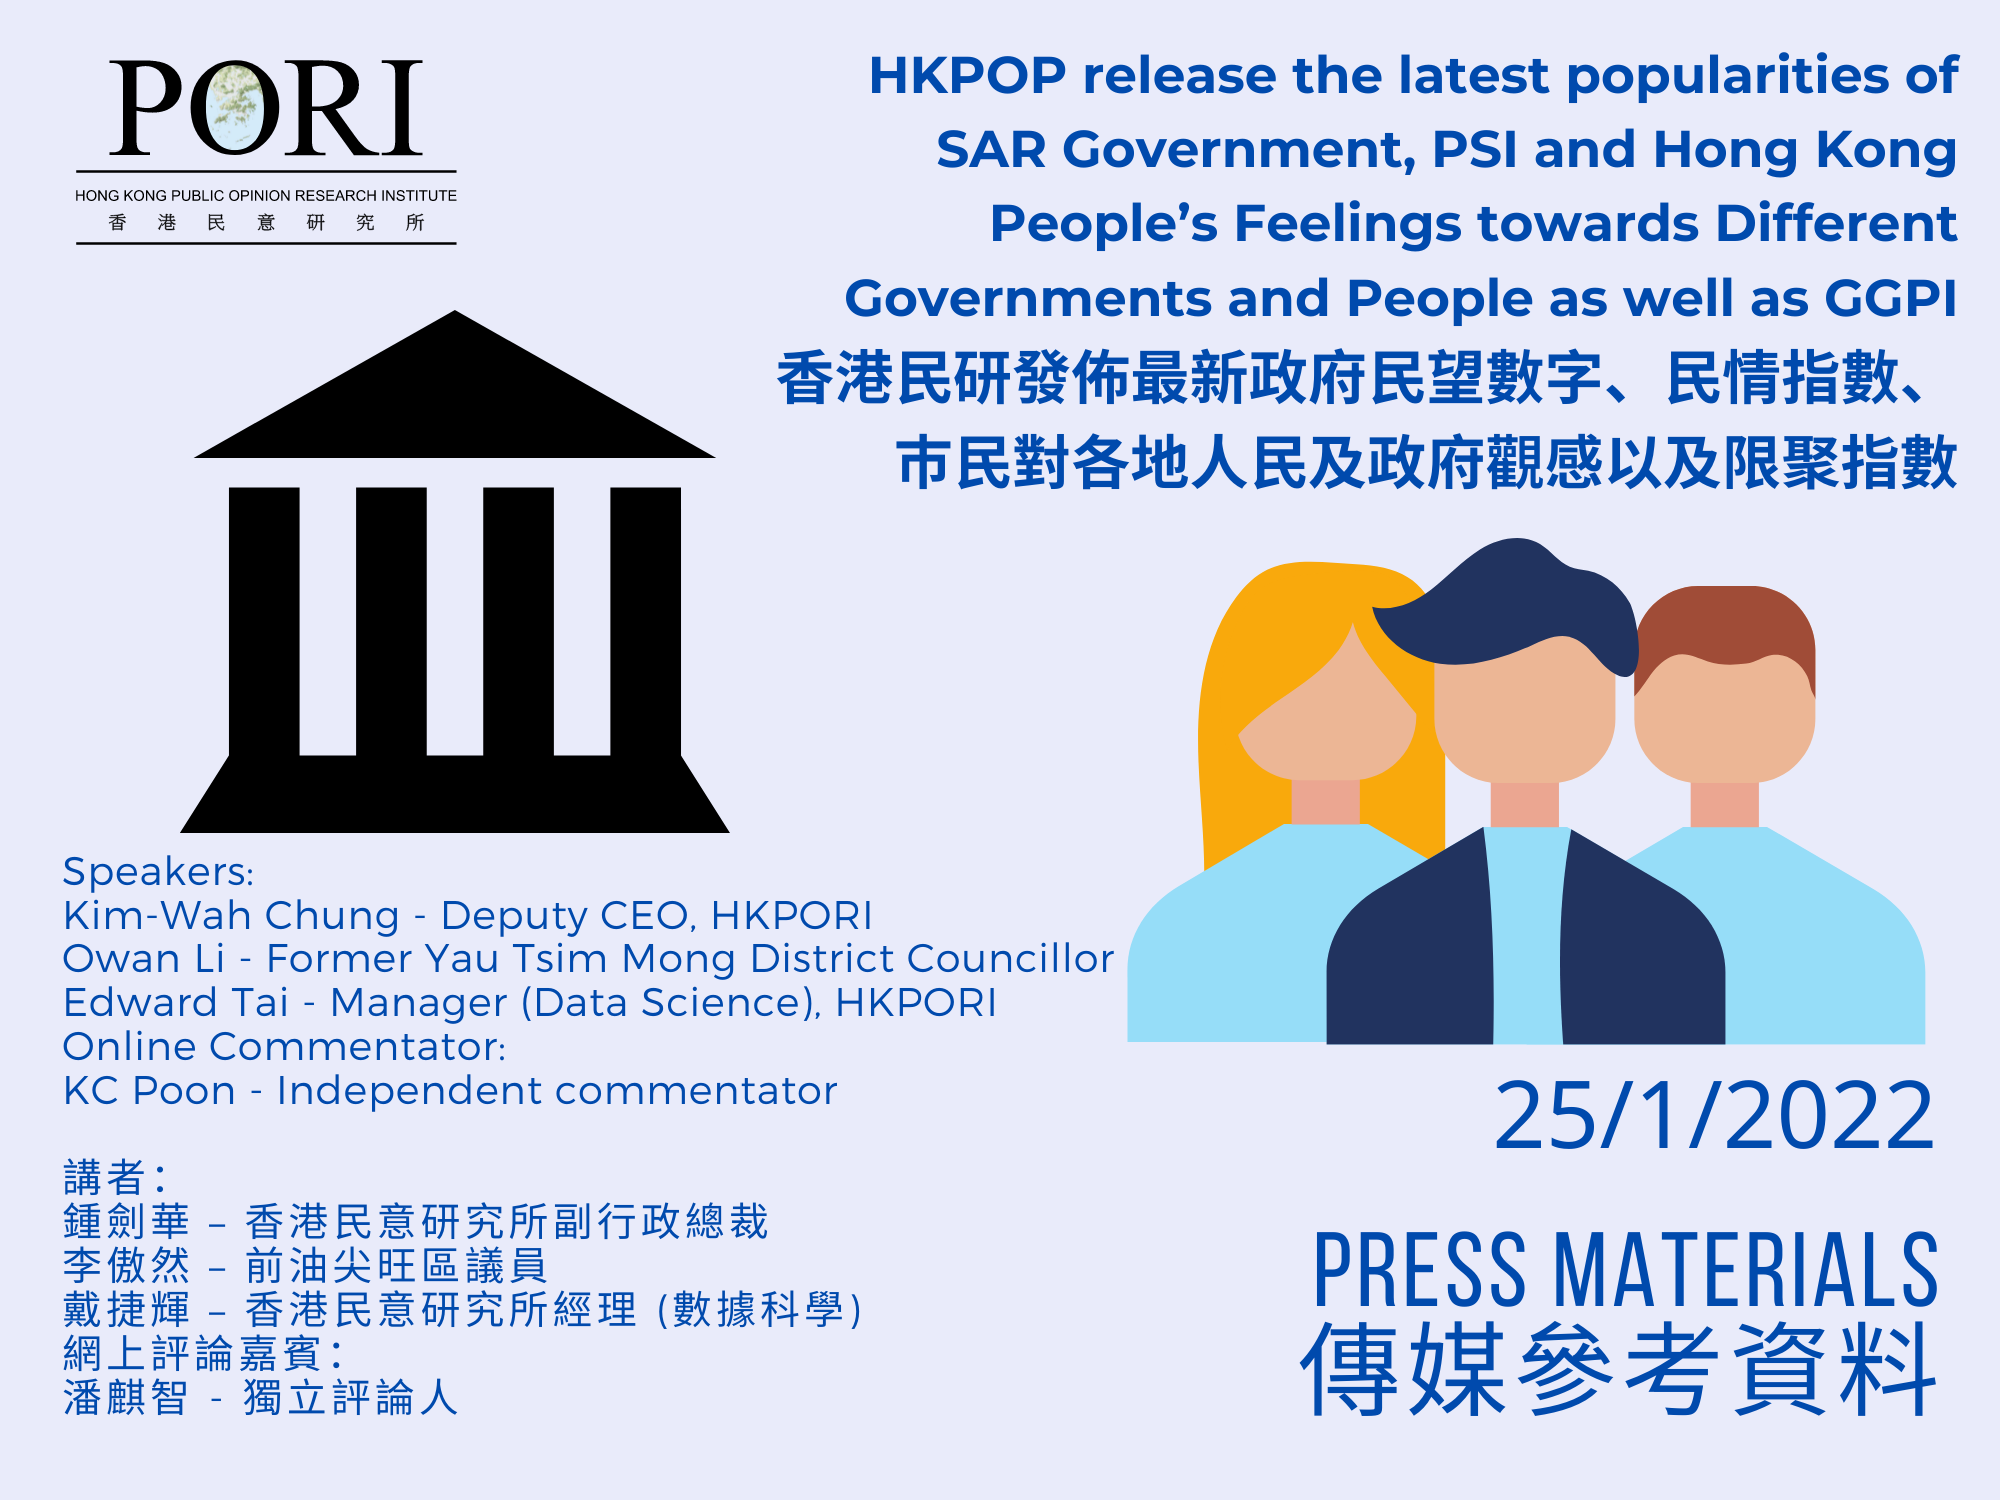 香港民研發佈最新政府民望數字、民情指數、巿民對各地人民及政府觀感以及限聚指數(2022-01-25)